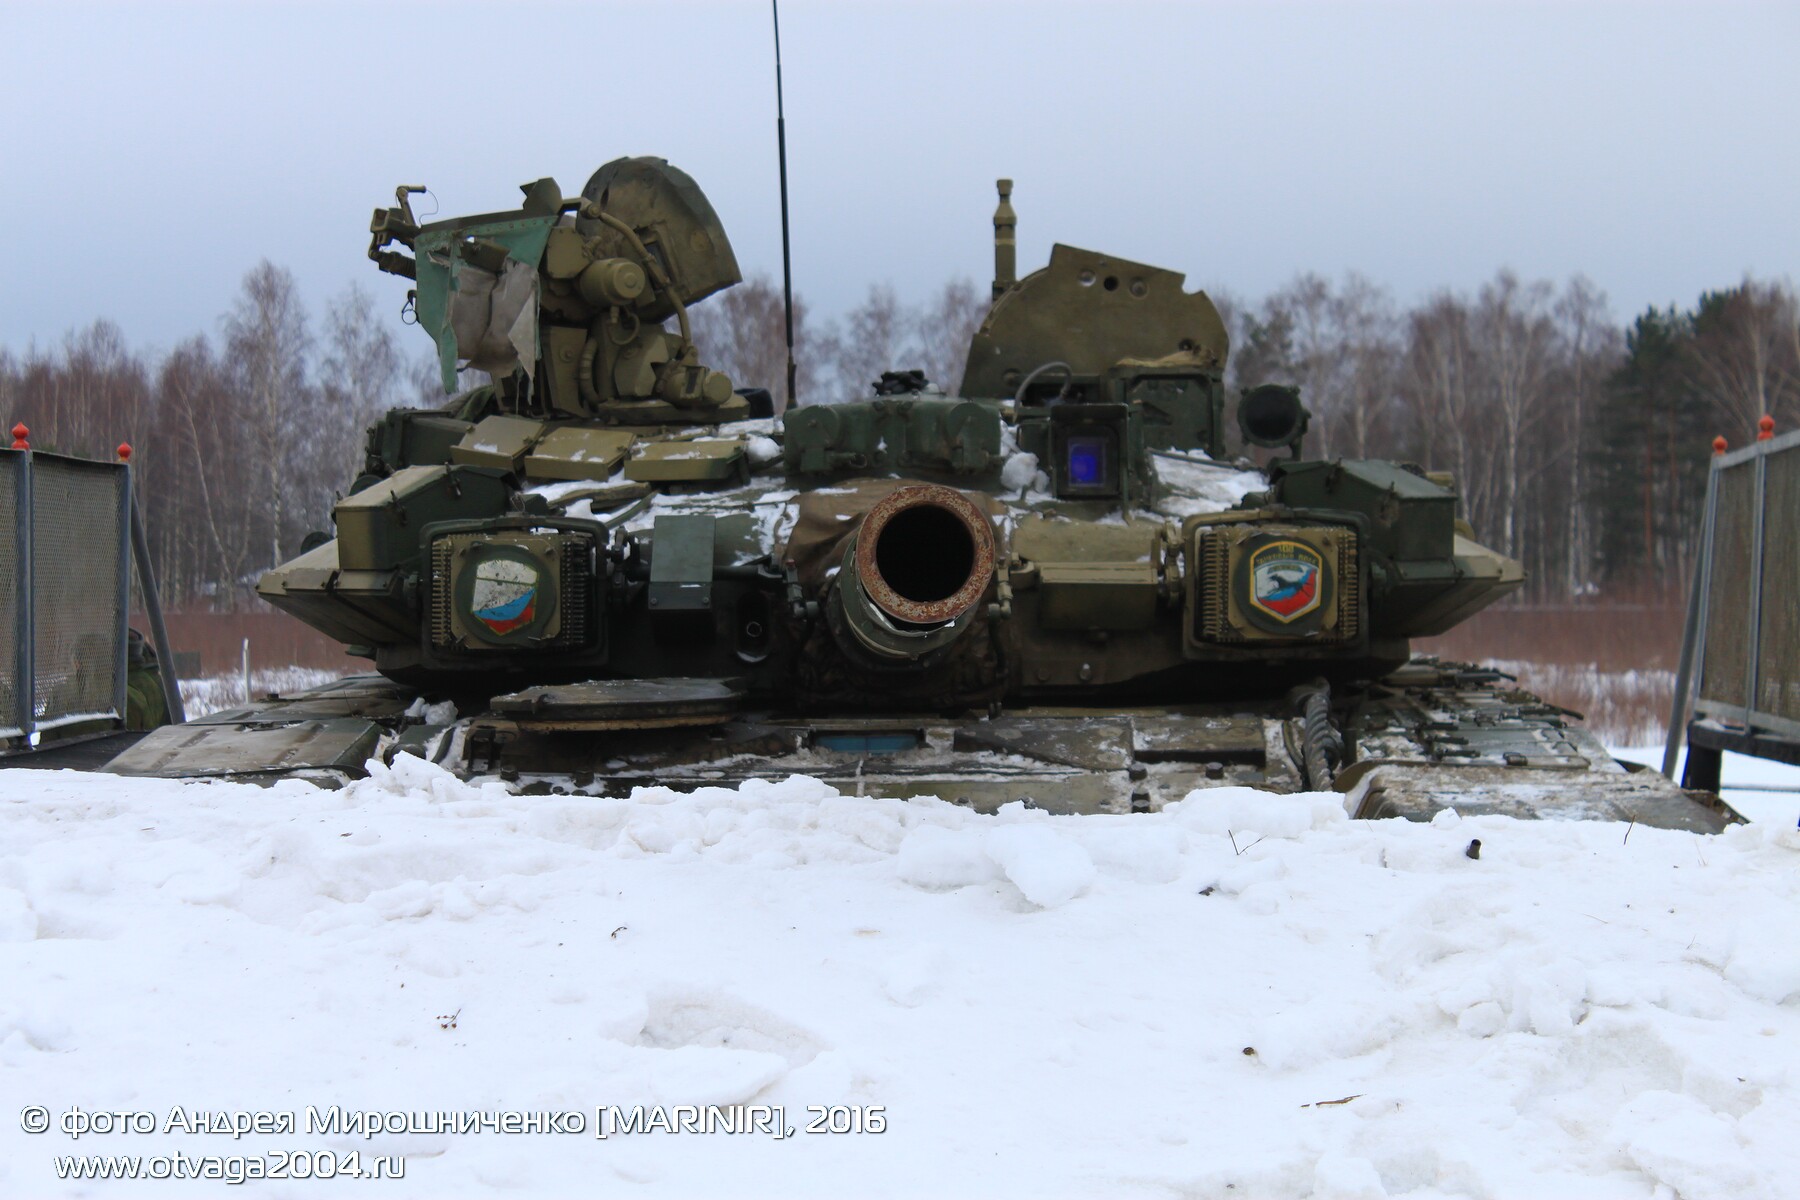 Танки Т-90 в подразделении Вооруженных сил России - фотообзор